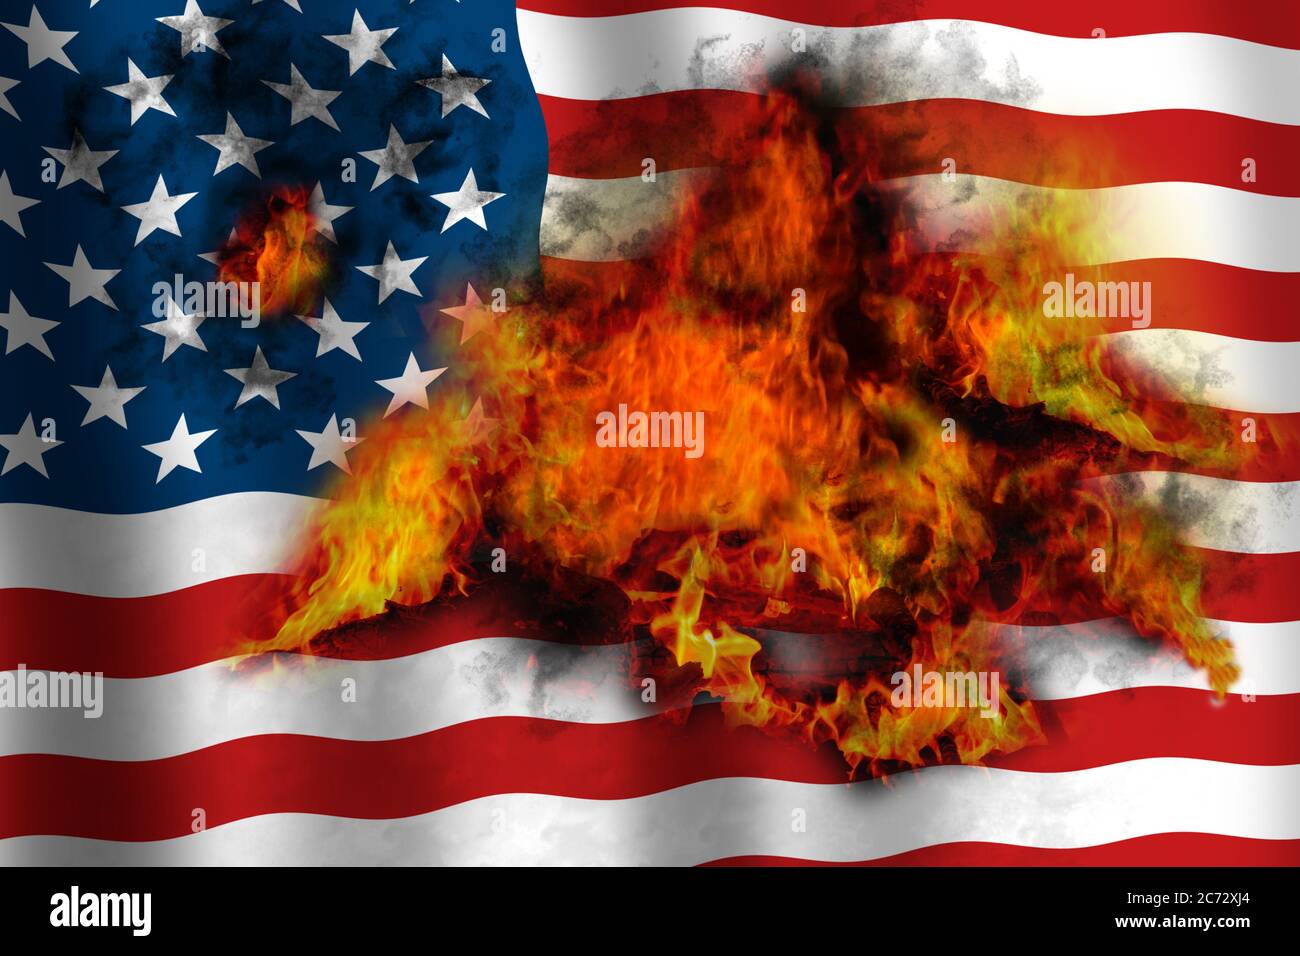 Bandiera americana che sventola in fiamme che bruciano dall'interno.  Immagine concettuale Foto stock - Alamy